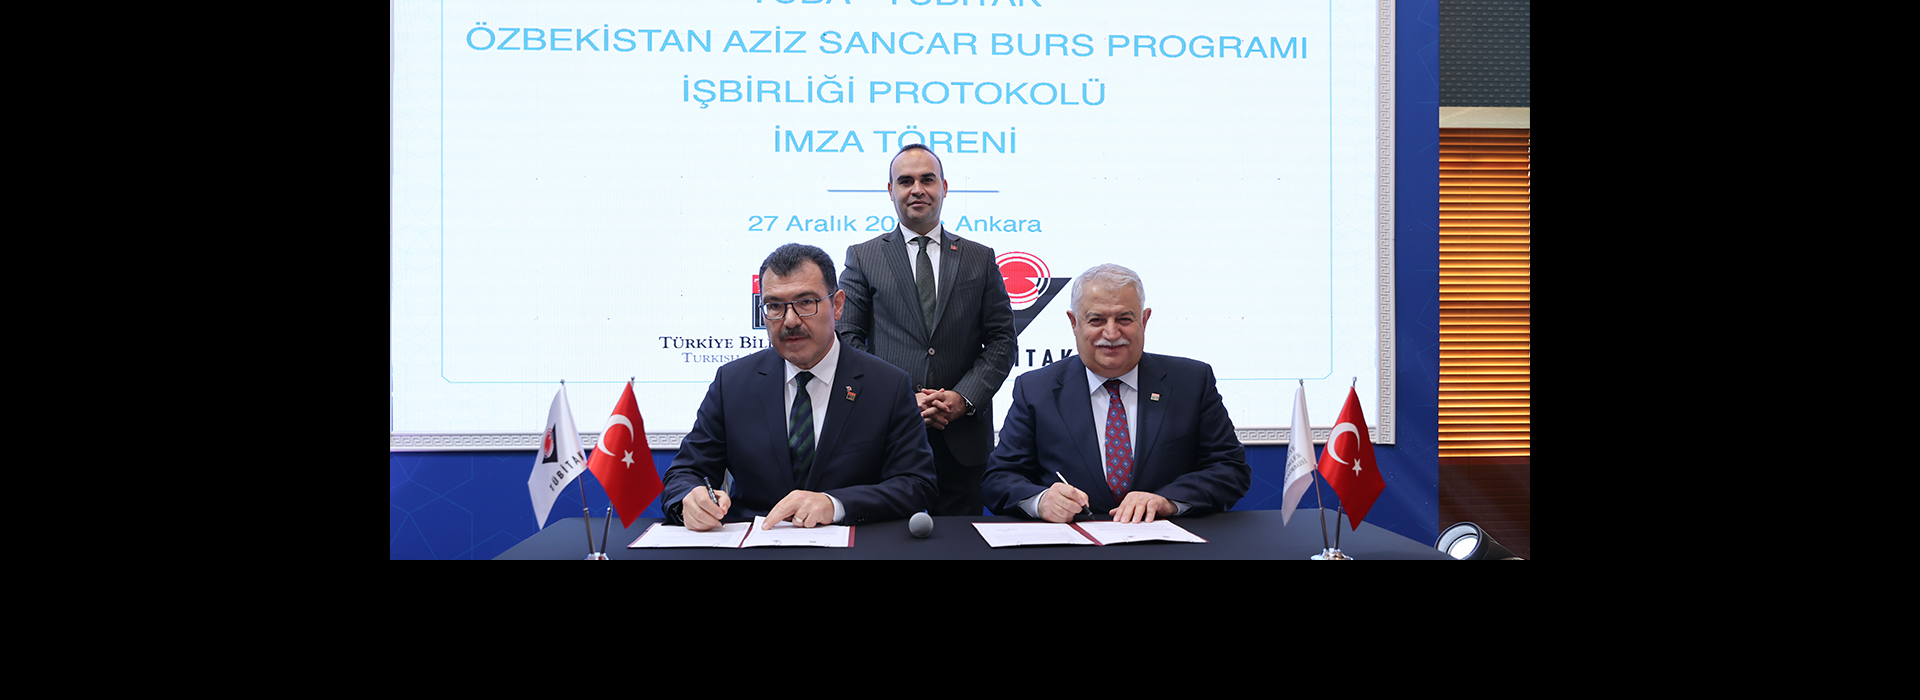 TÜBA ve TÜBİTAK, Özbekistan Aziz Sancar Burs Programı Protokolü İmzalandı